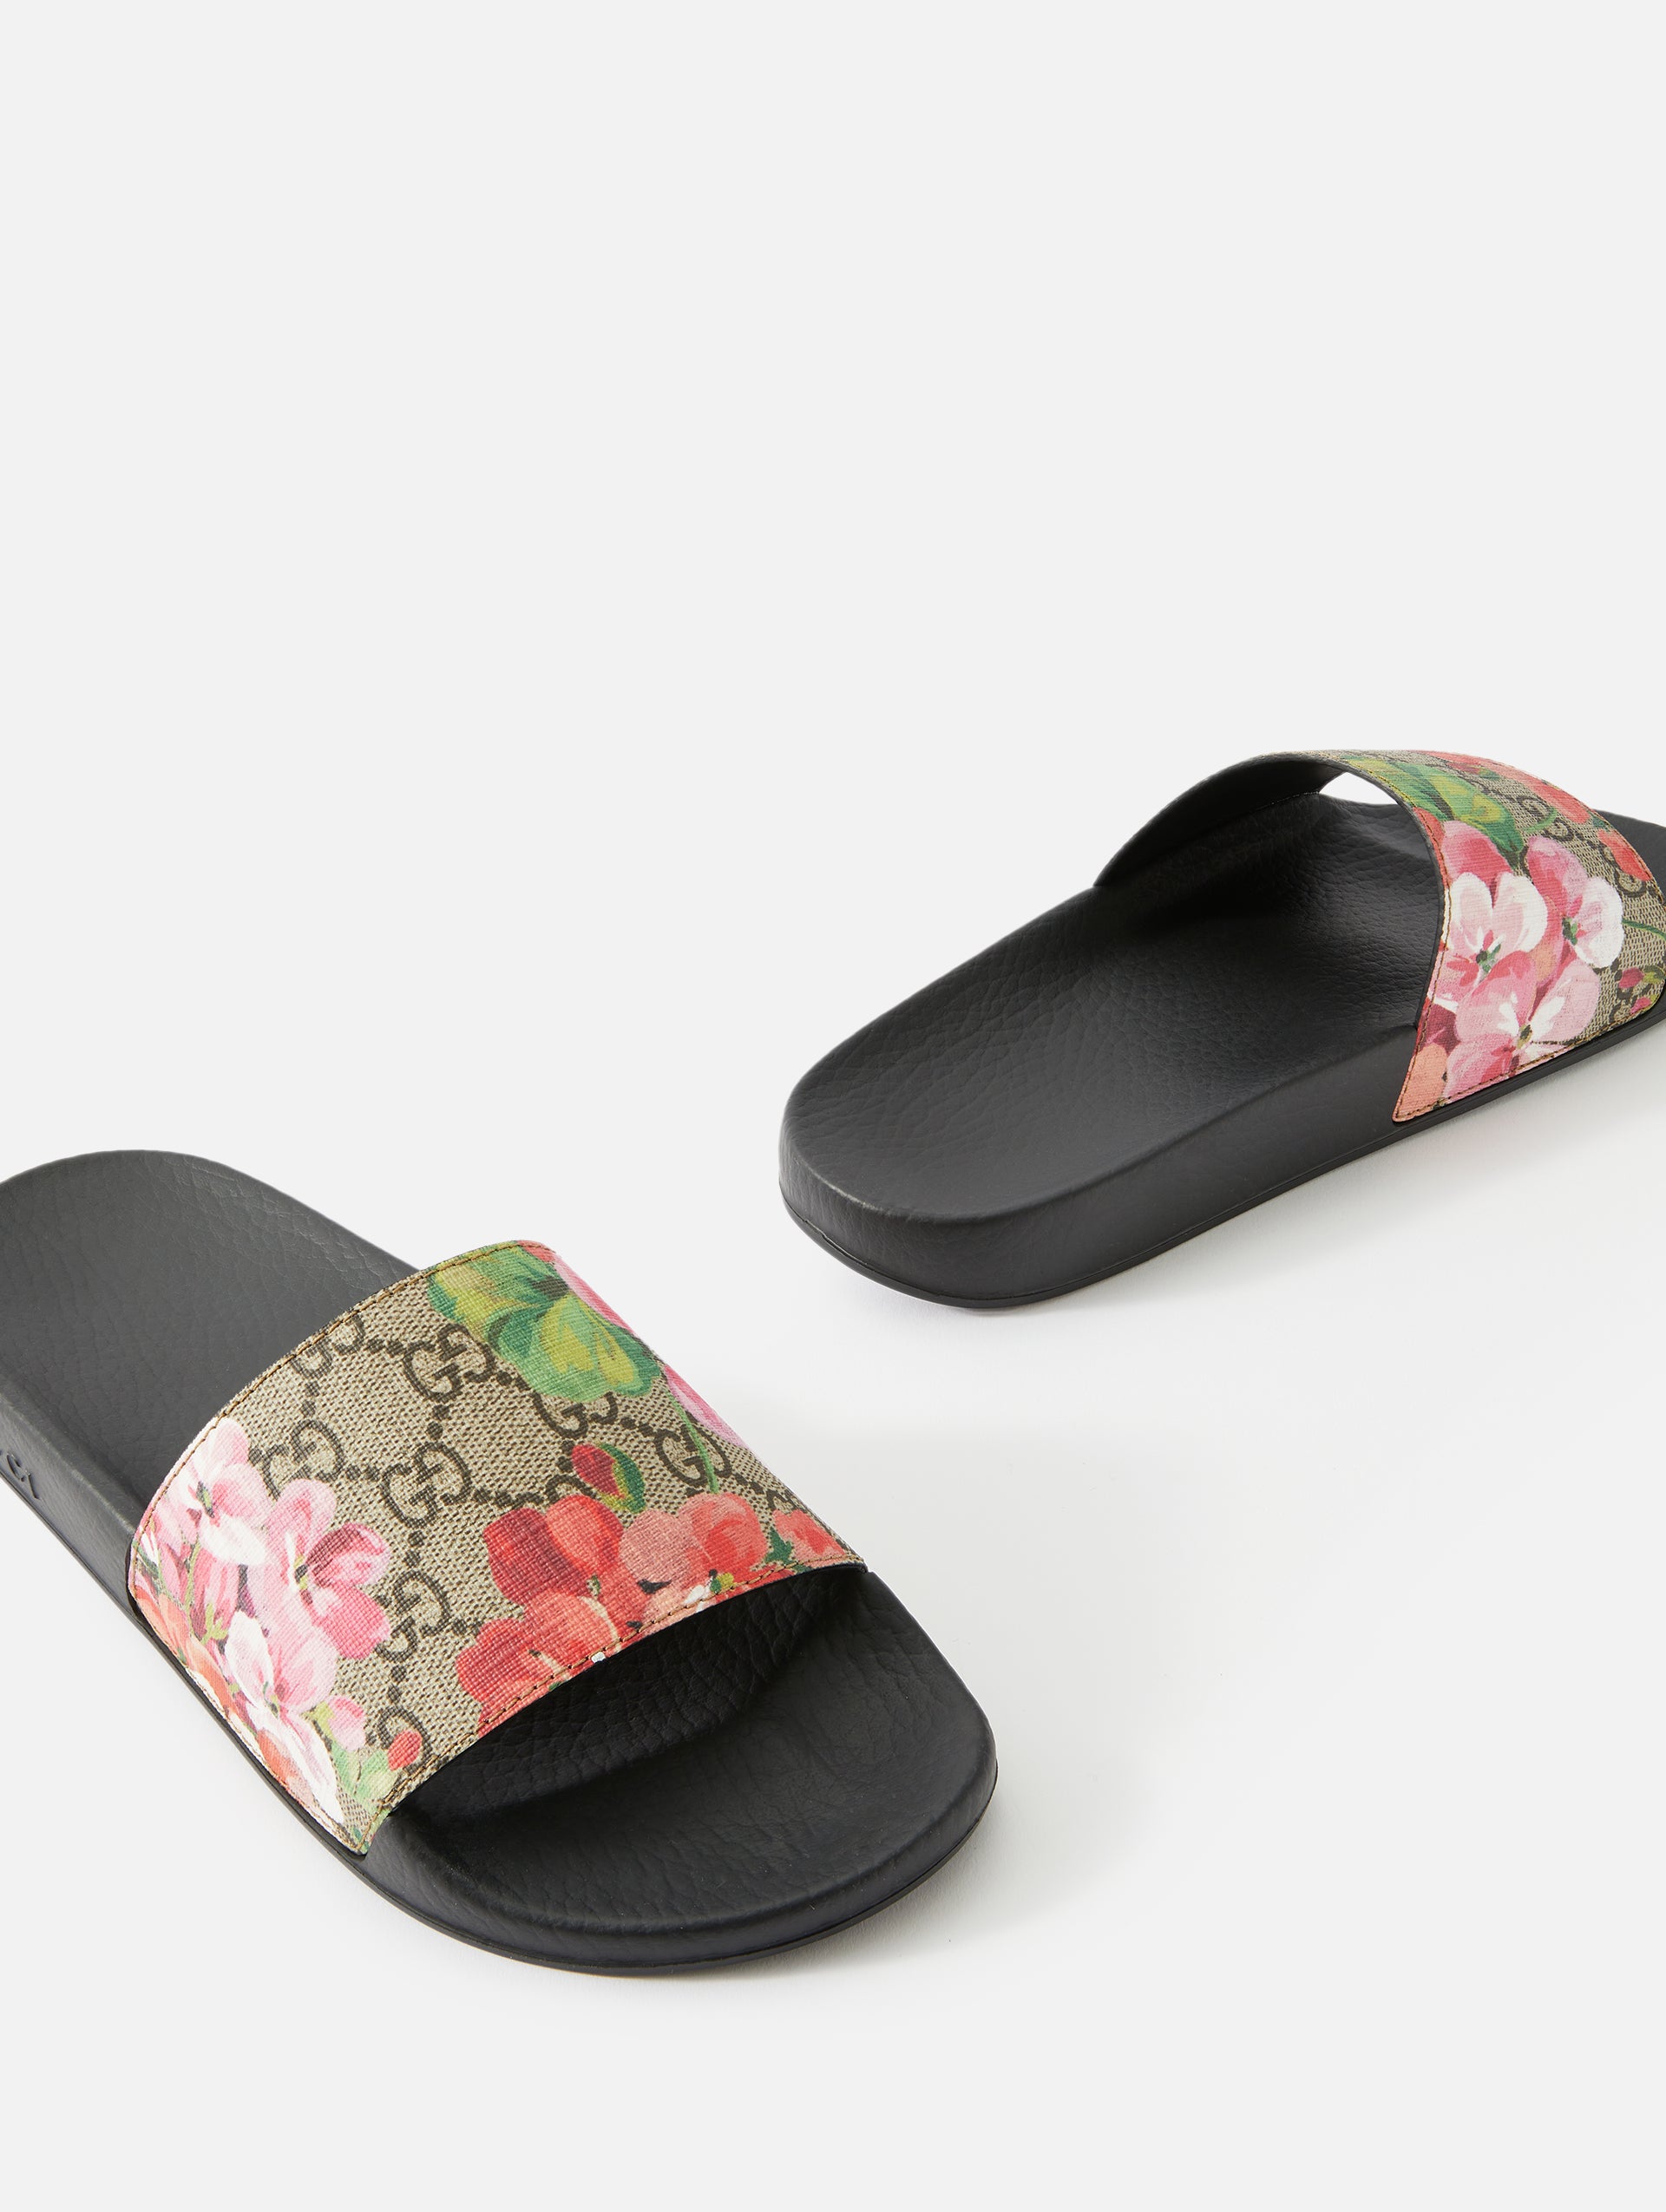 GG Blooms Supreme Floral Slide Sandal | GUCCI | elysewalker